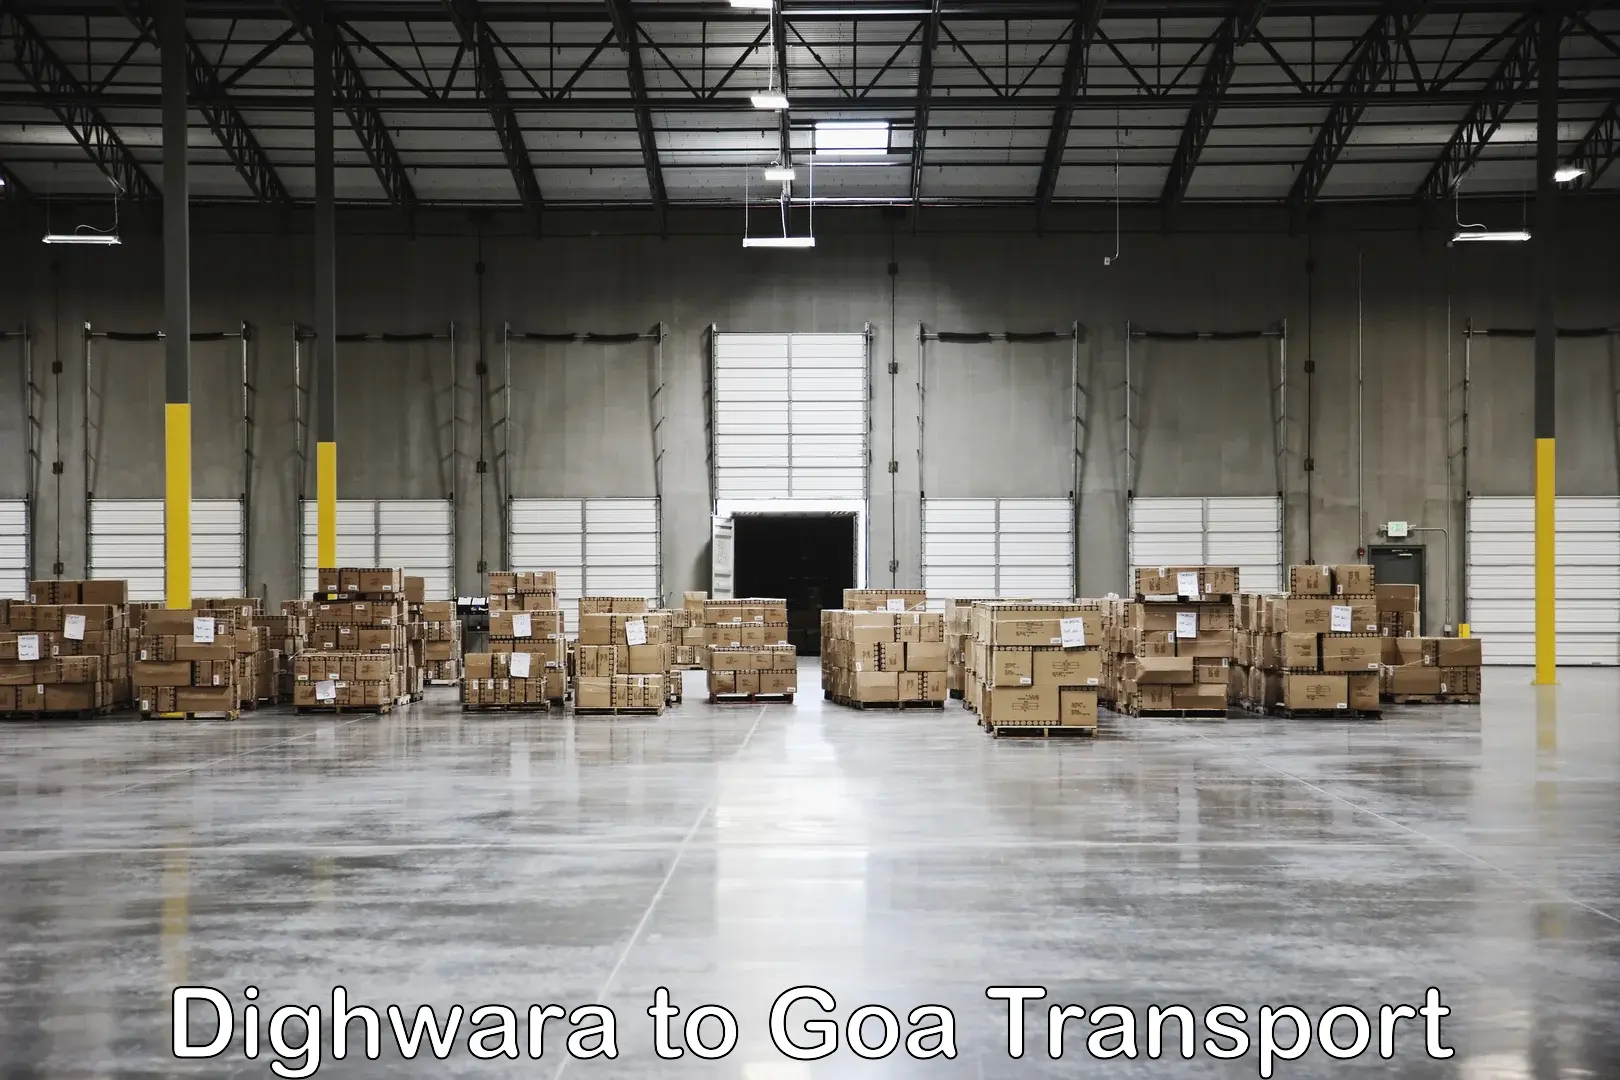 Daily transport service Dighwara to Mormugao Port